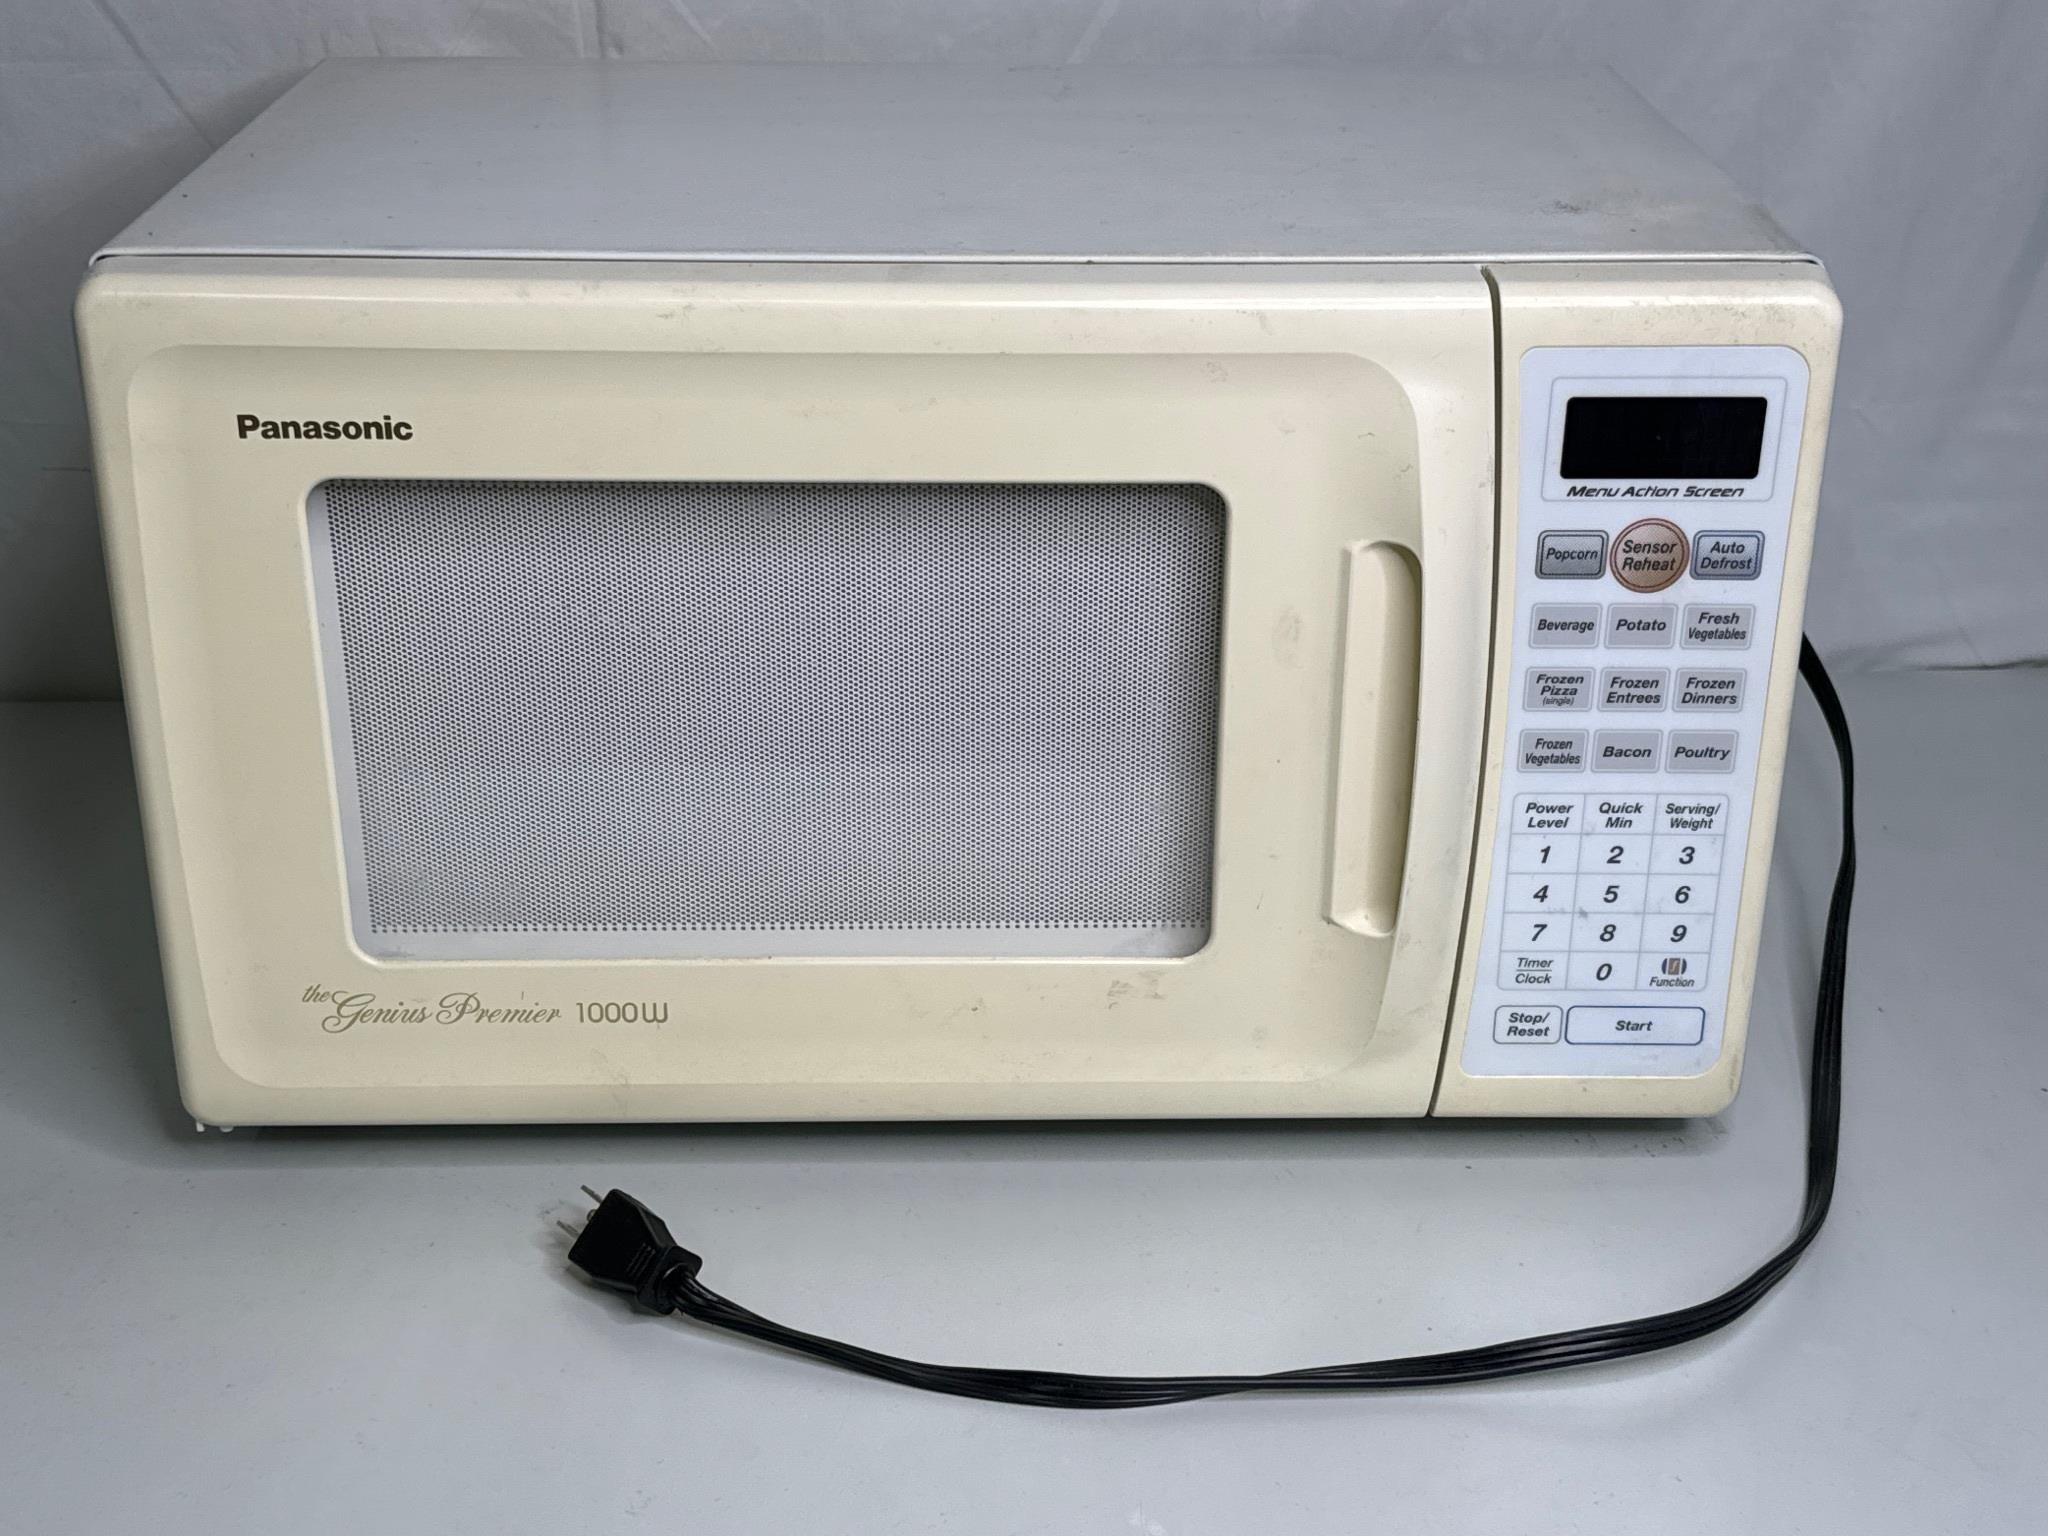 Panasonic The Genius Premier 1000W Microwave